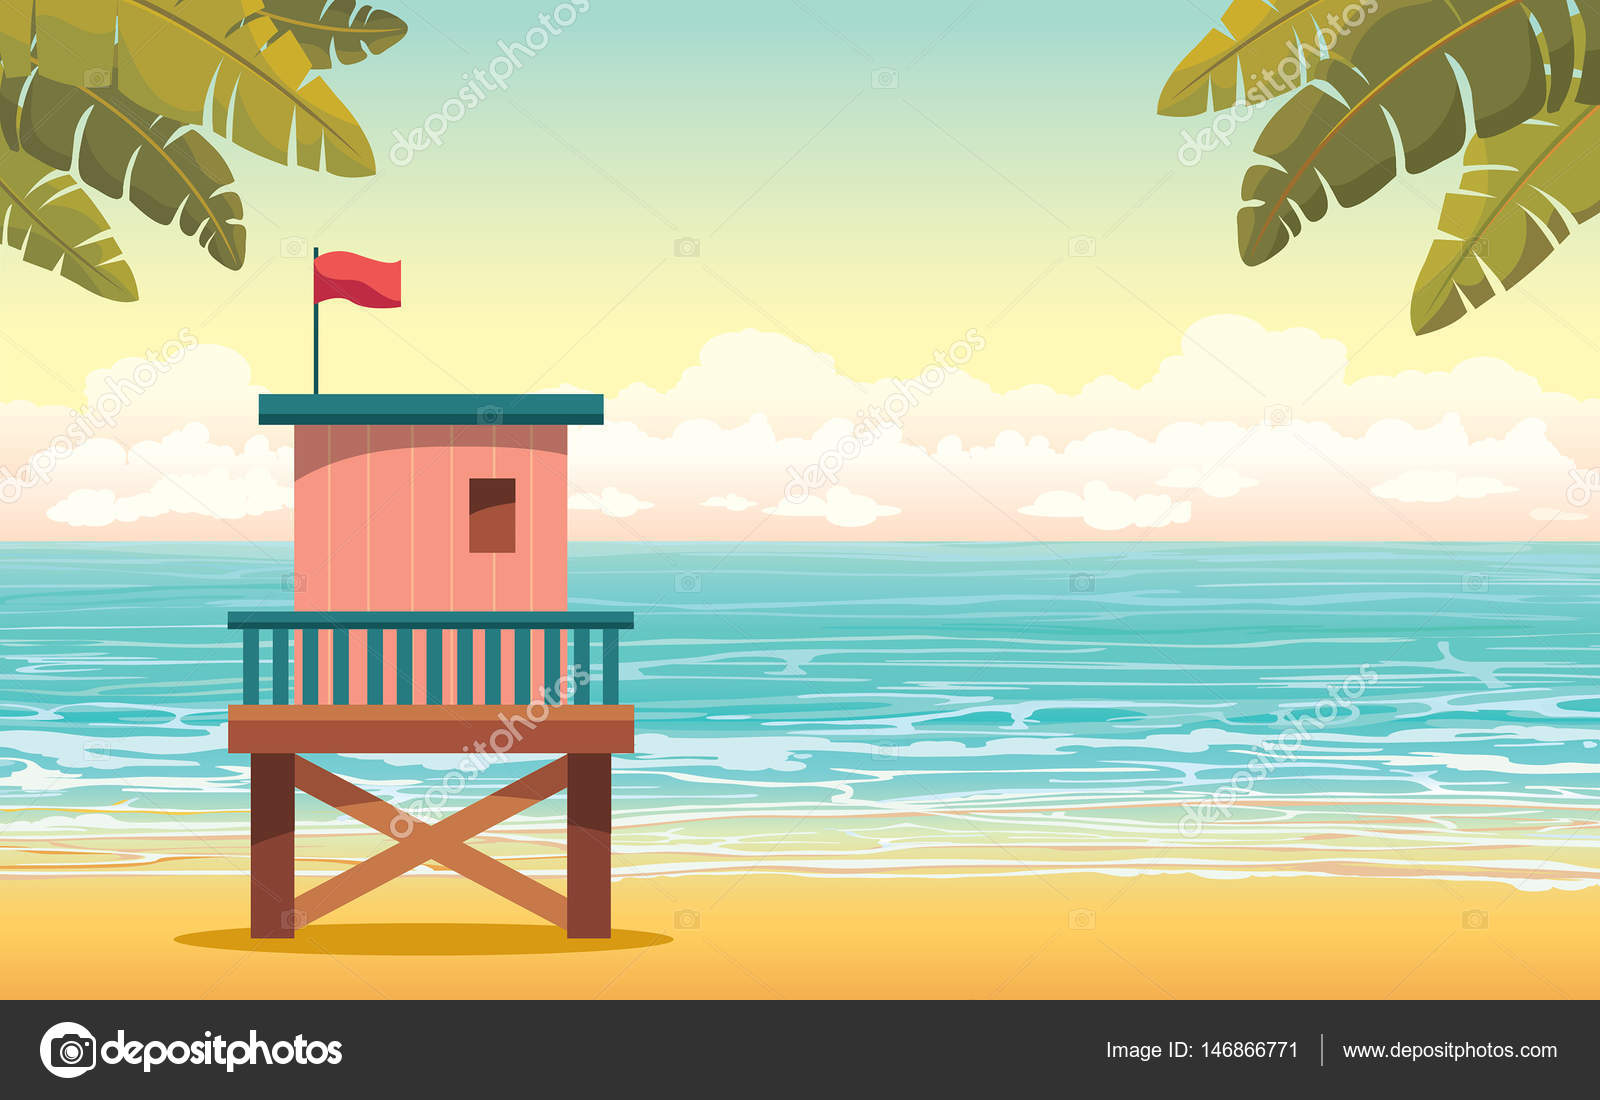 áˆ Paisaje Playa Dibujo Animado De Stock Dibujos Paisaje De Dibujos Animados Verano Playa Descargar En Depositphotos